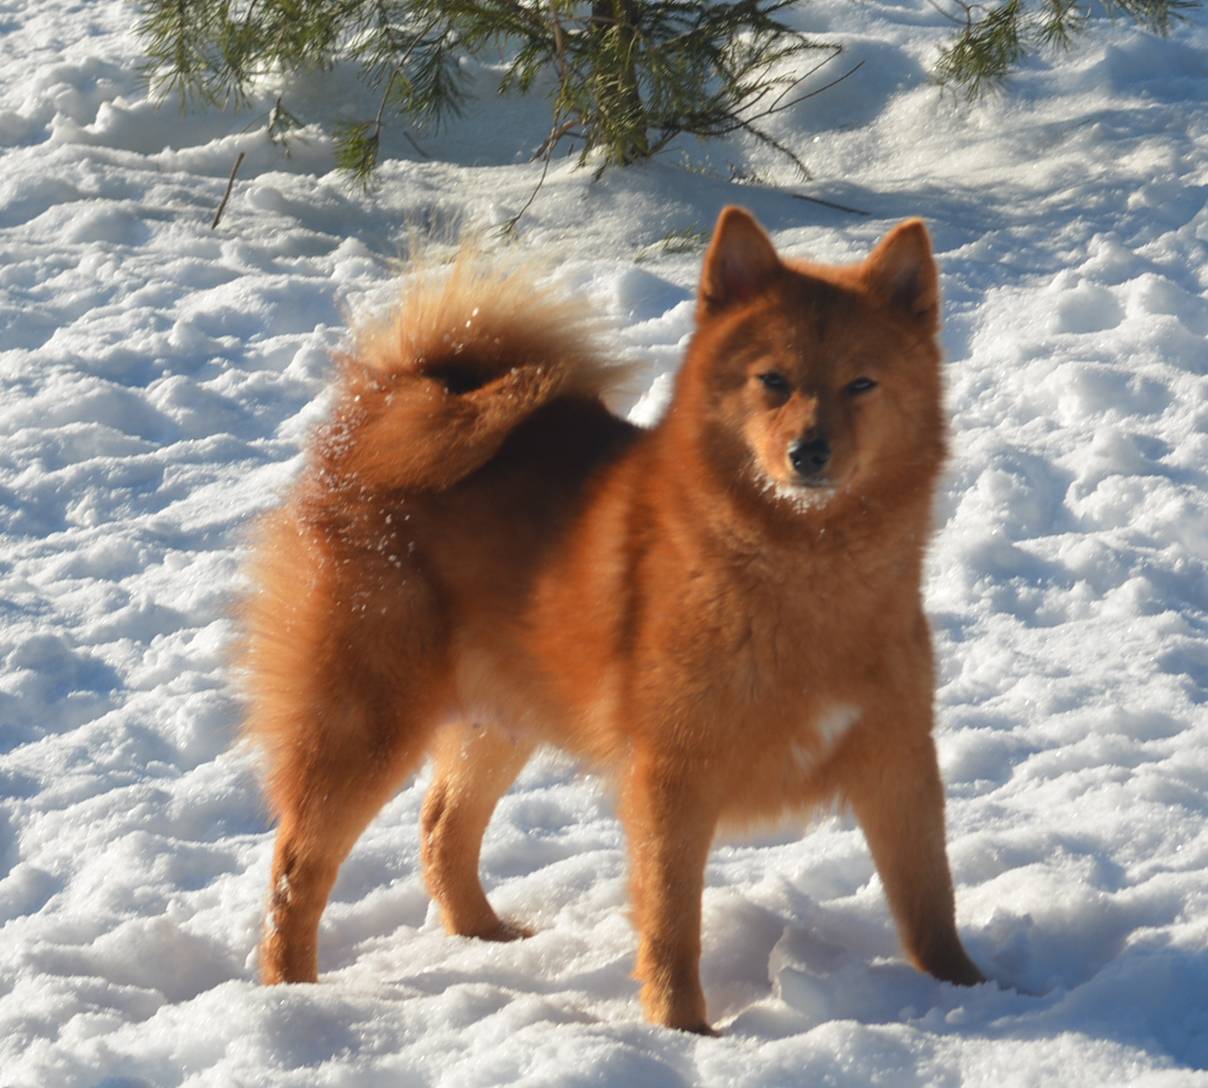 Карело-финская лайка (финский шпиц) — описание собаки с фото